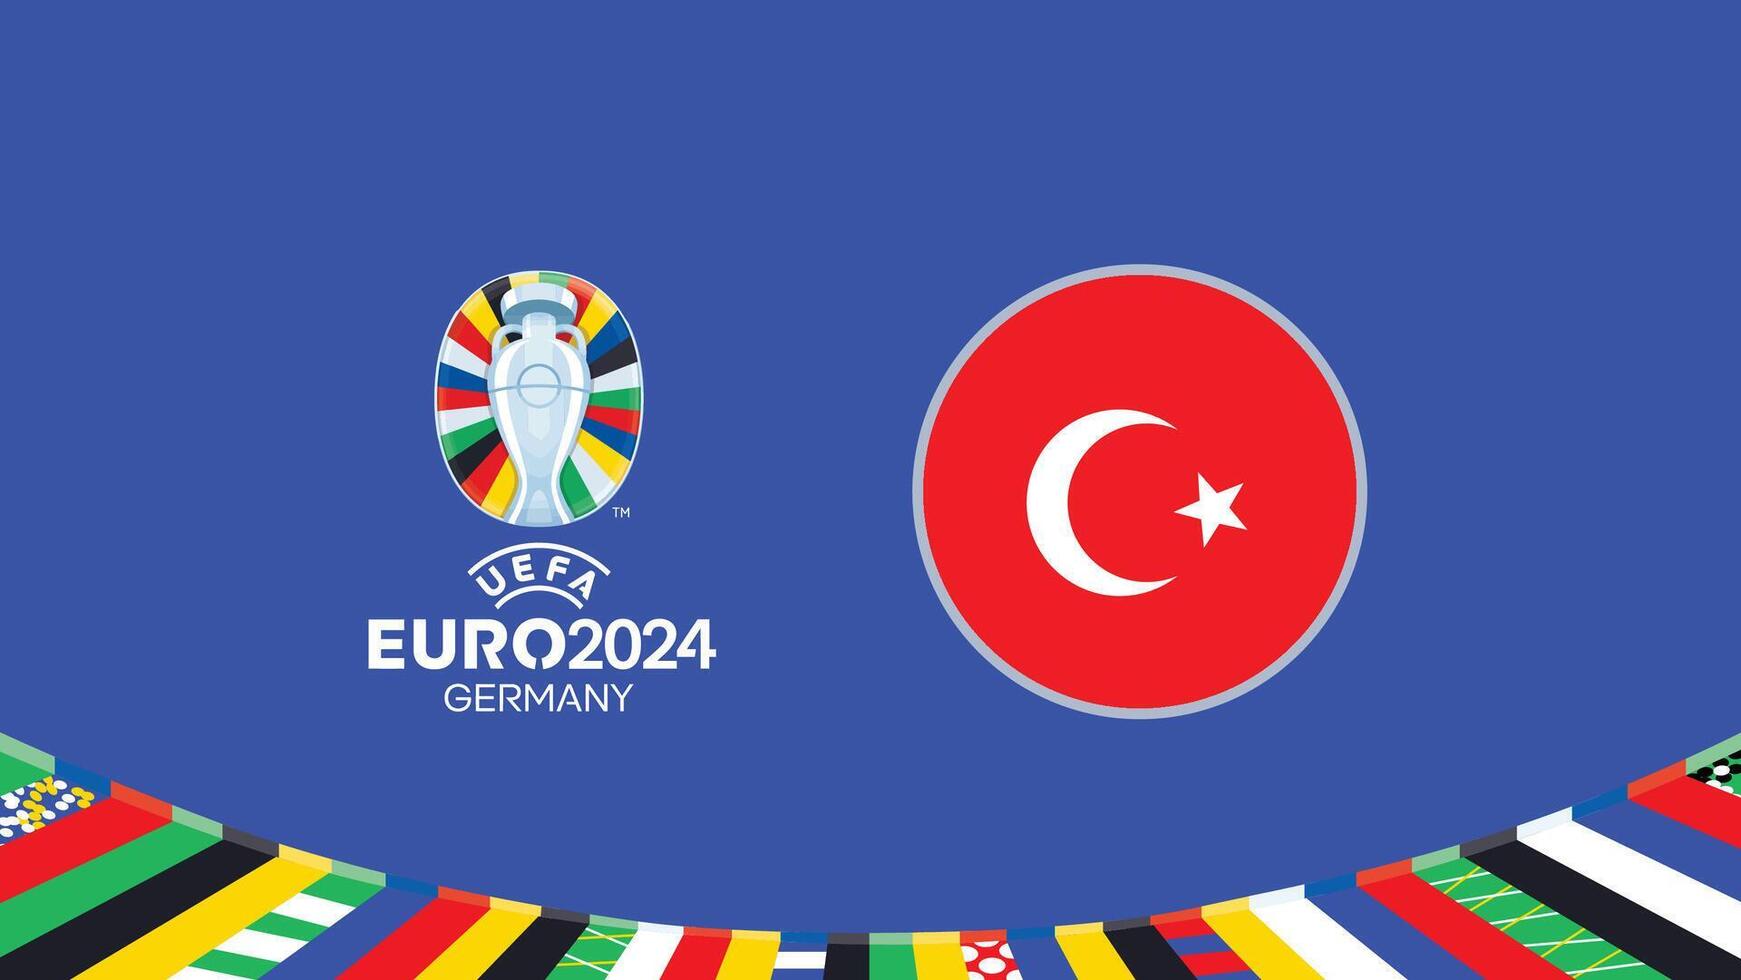 Euro 2024 Deutschland turkiye Flagge Teams Design mit offiziell Symbol Logo abstrakt Länder europäisch Fußball Illustration vektor